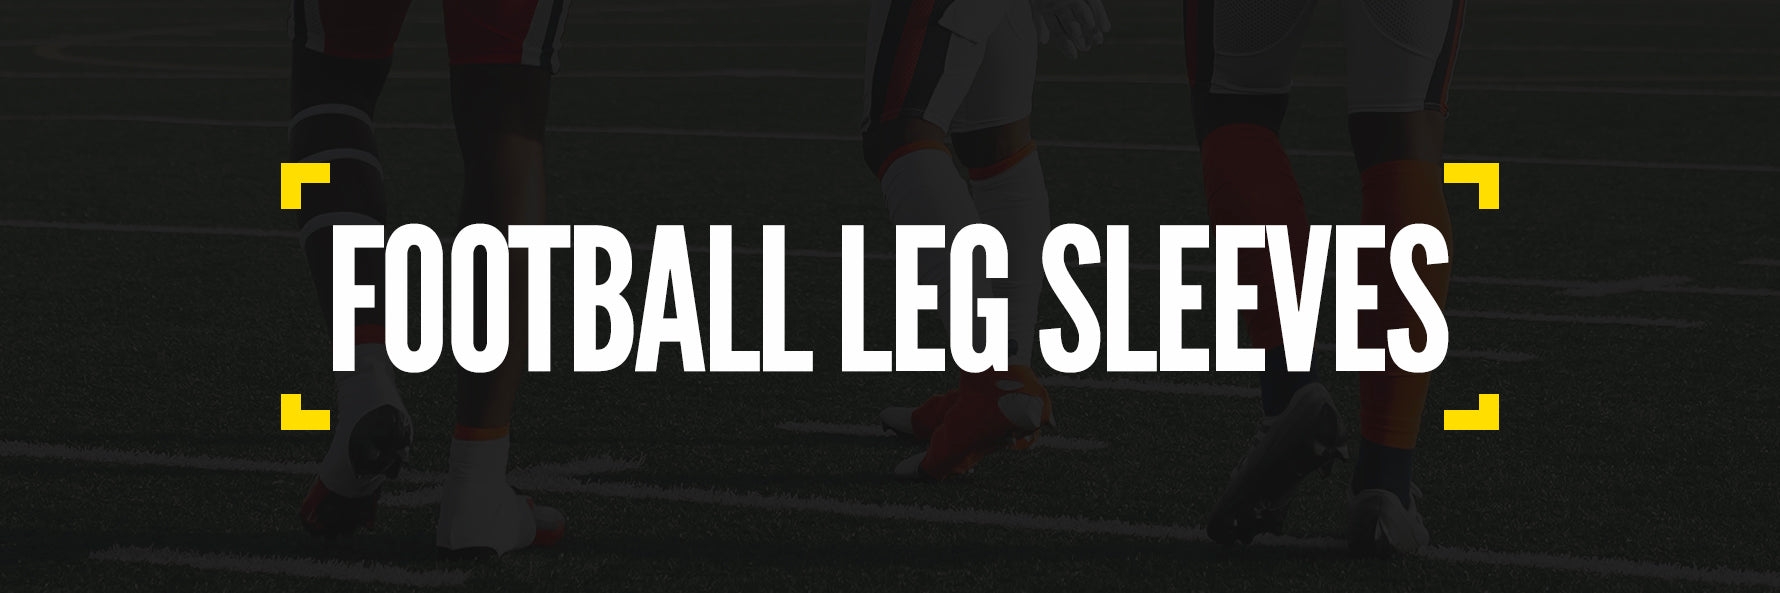 Quality scrunch football socks – SLEEFS